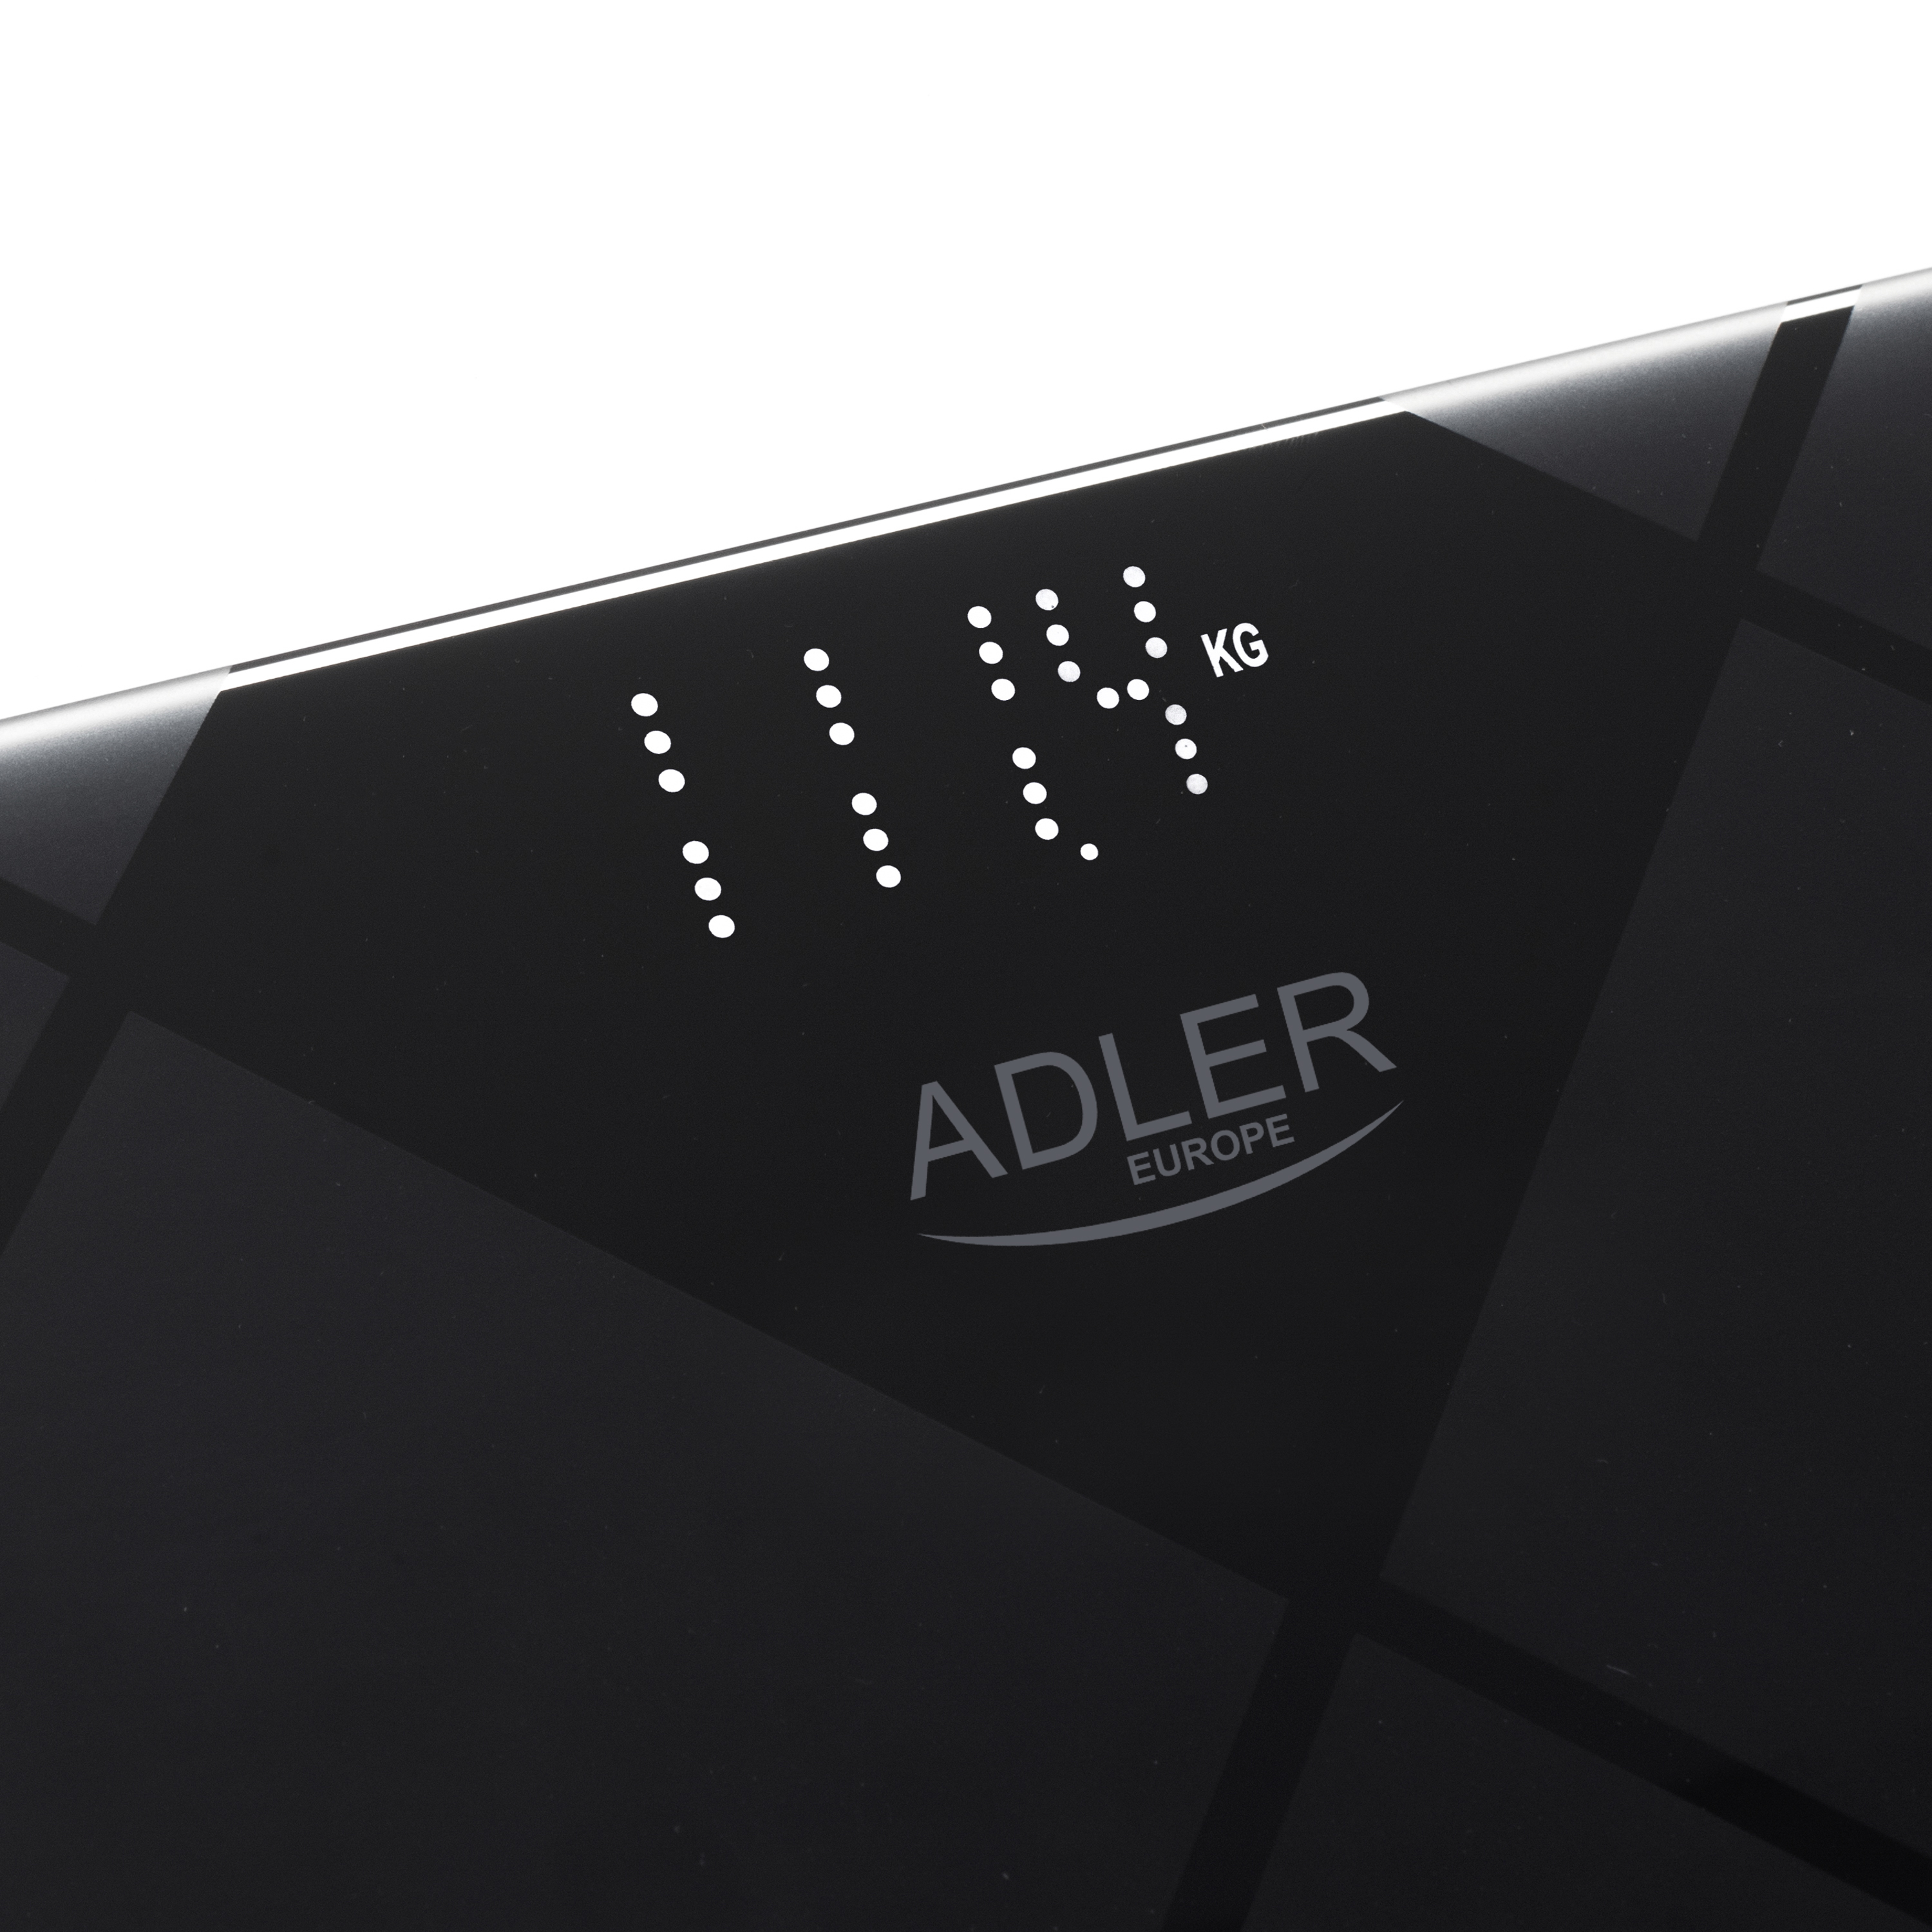 Adler AD8169 - digitale LED Personenwaage bis 180kg - Waage